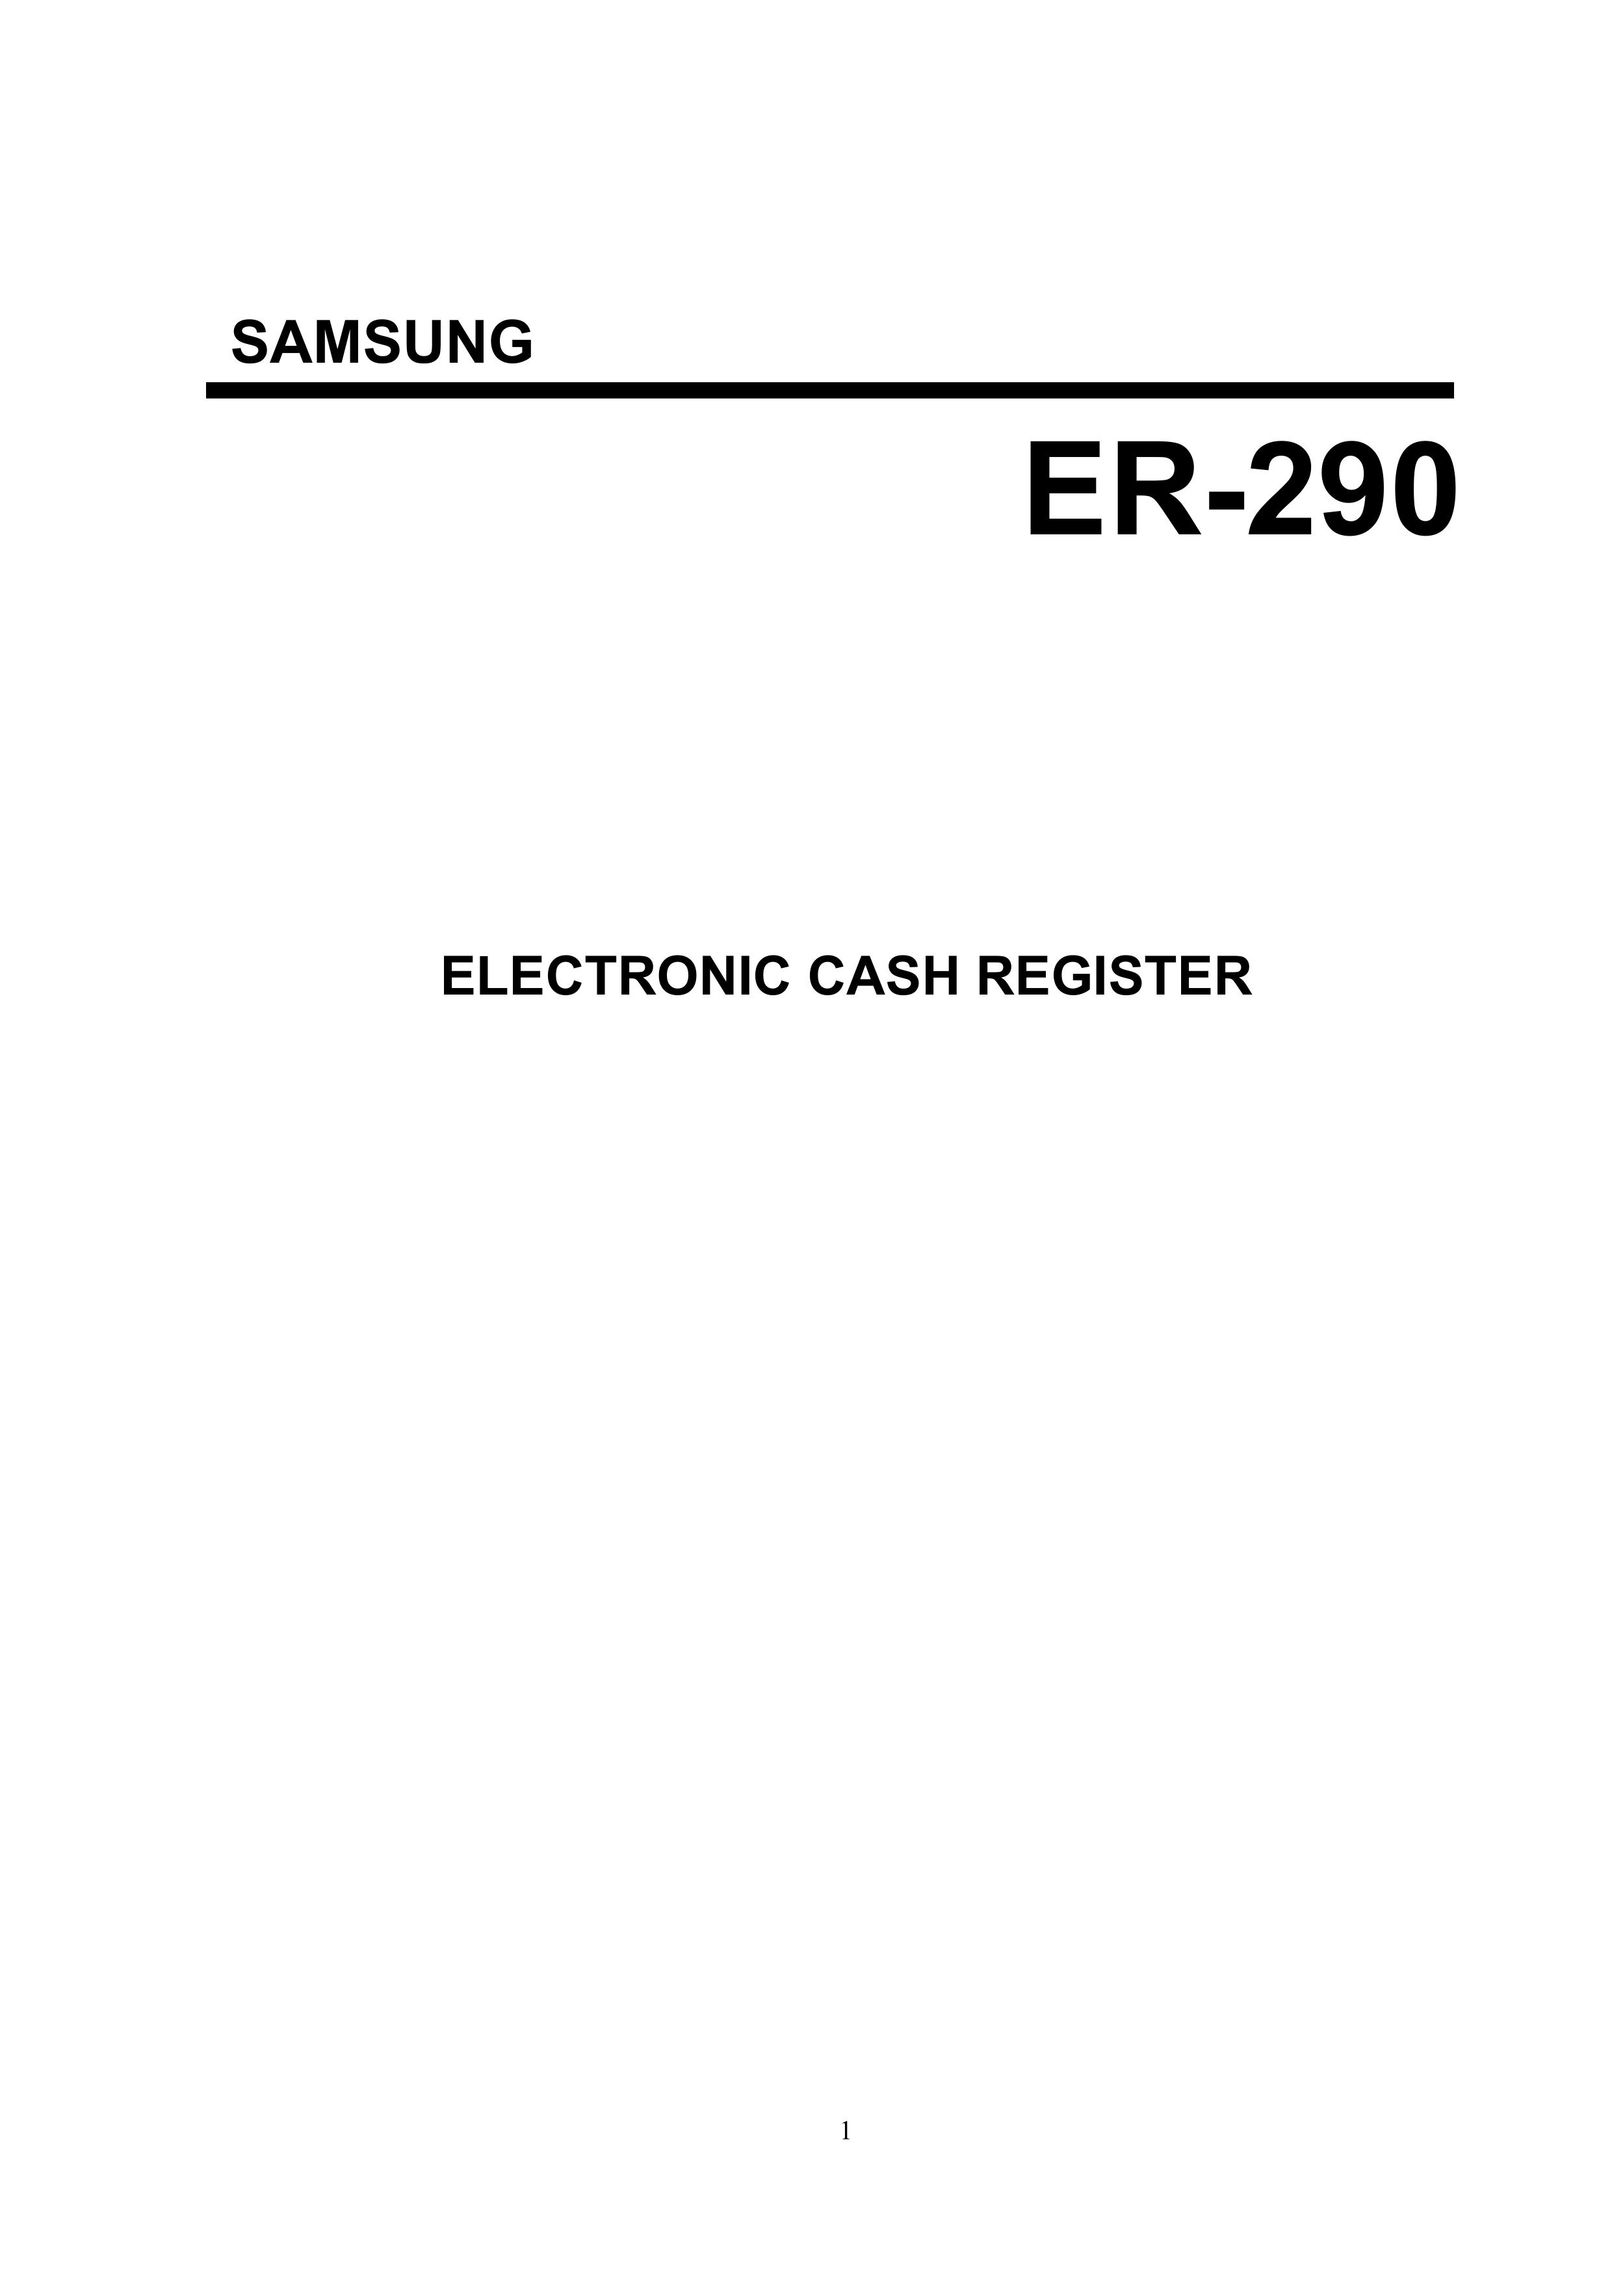 Samsung electronic cash register Cash Register User Manual